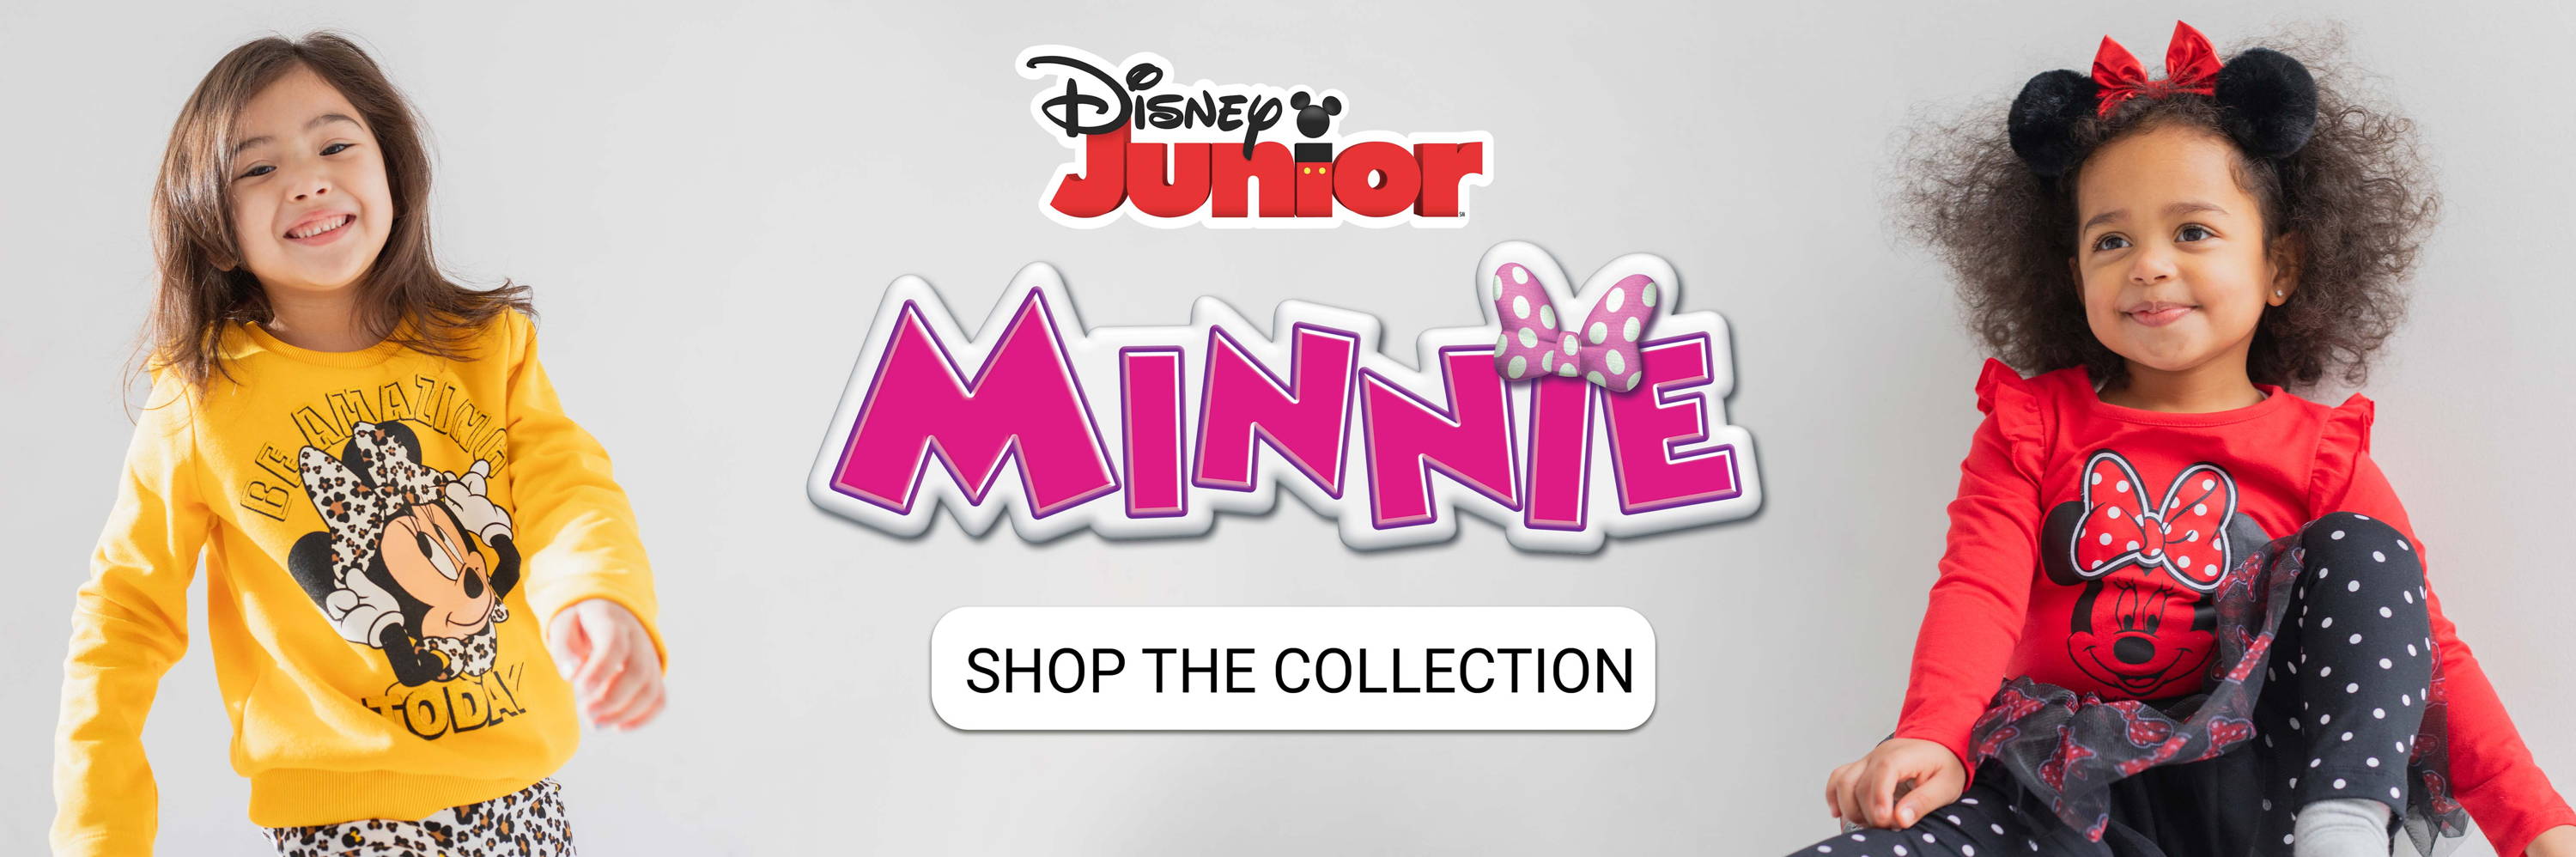 Colección Minnie Mouse